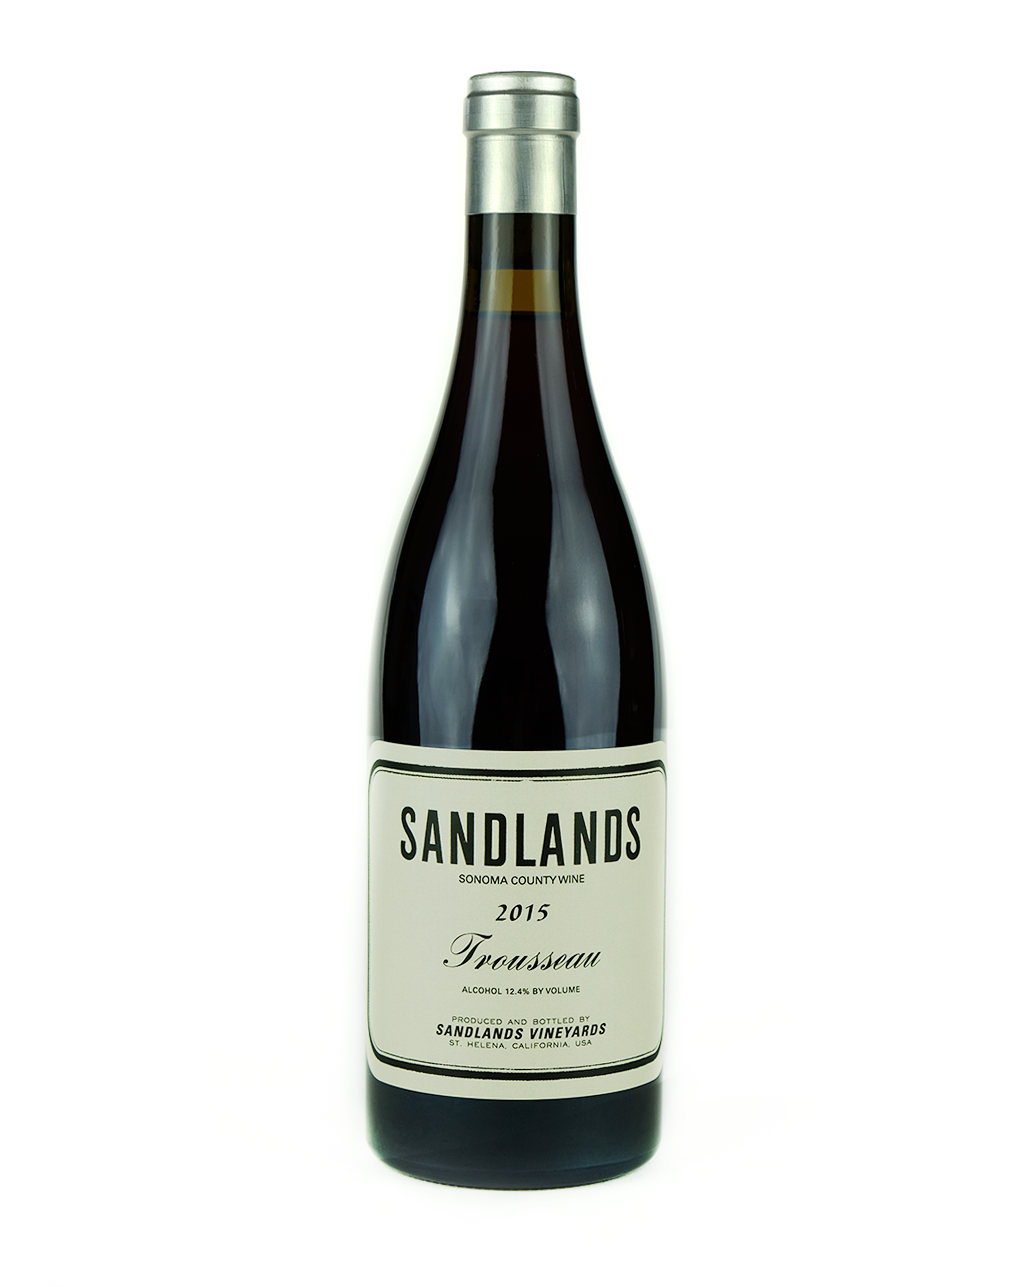 Sandlands 2015 Trousseau